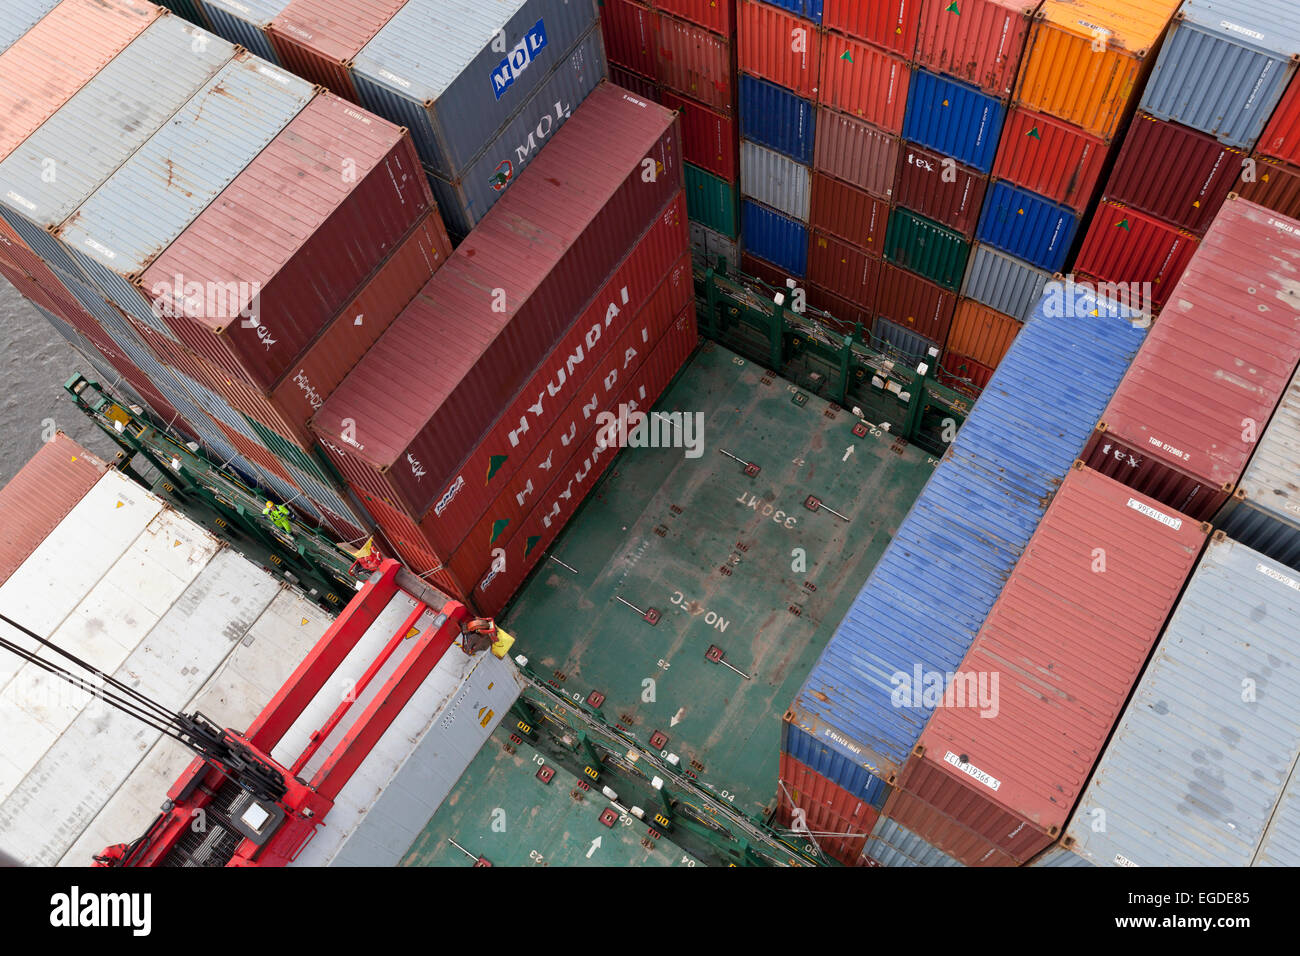 Chargement de conteneurs sur un navire, Hambourg, Allemagne Banque D'Images